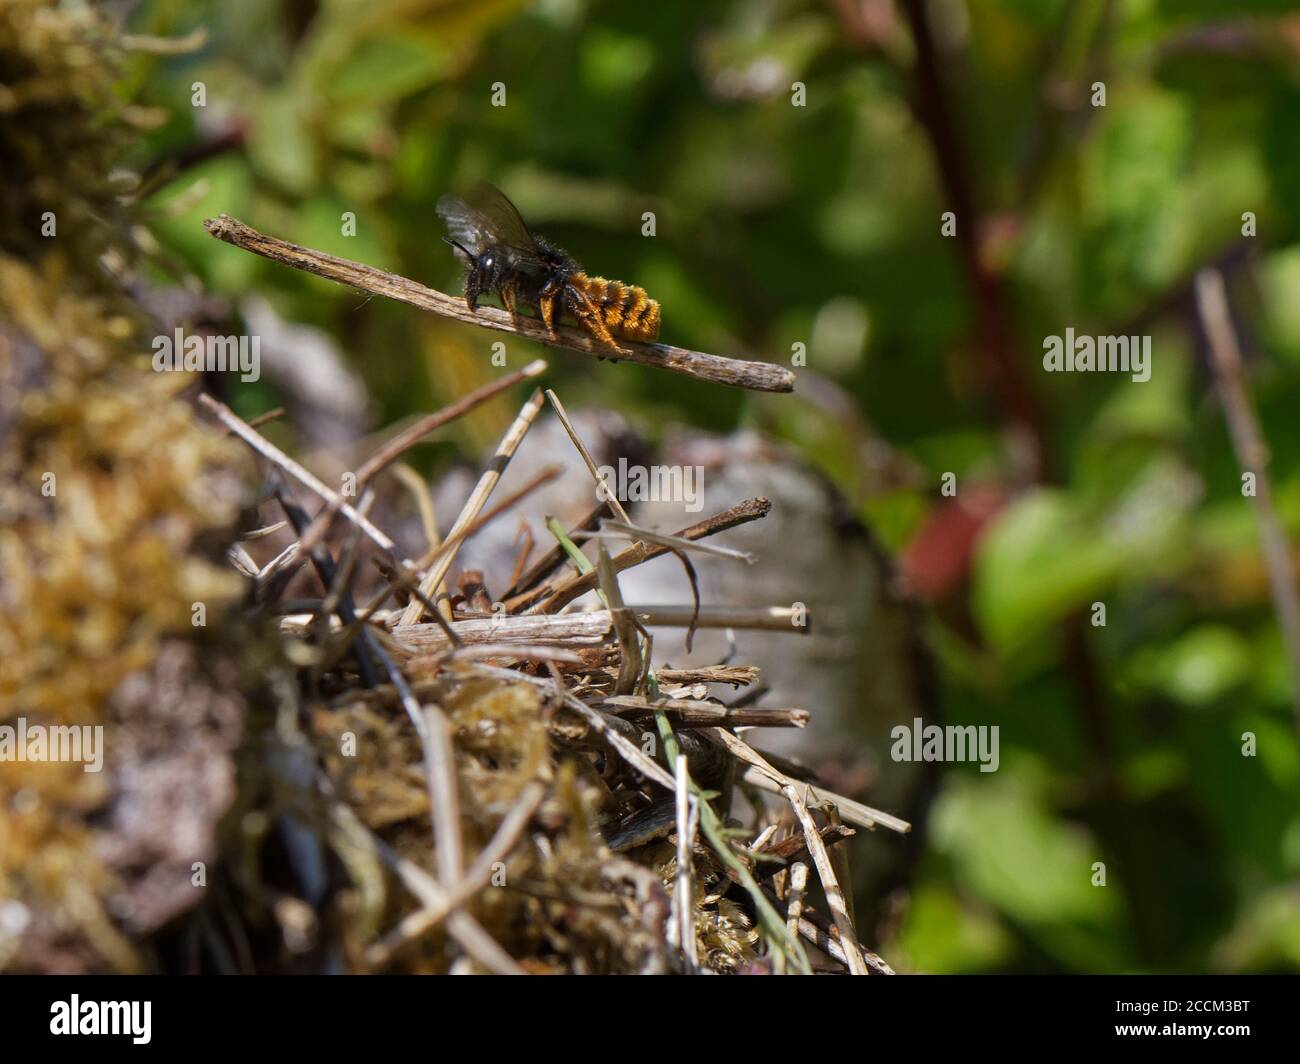 L'abeille mason bicolore (Osmia bicolor) survolant avec un bâton pour ajouter à une pile de végétation camouflant son nid dans une coquille d'escargot à lèvres brunes, Royaume-Uni. Banque D'Images